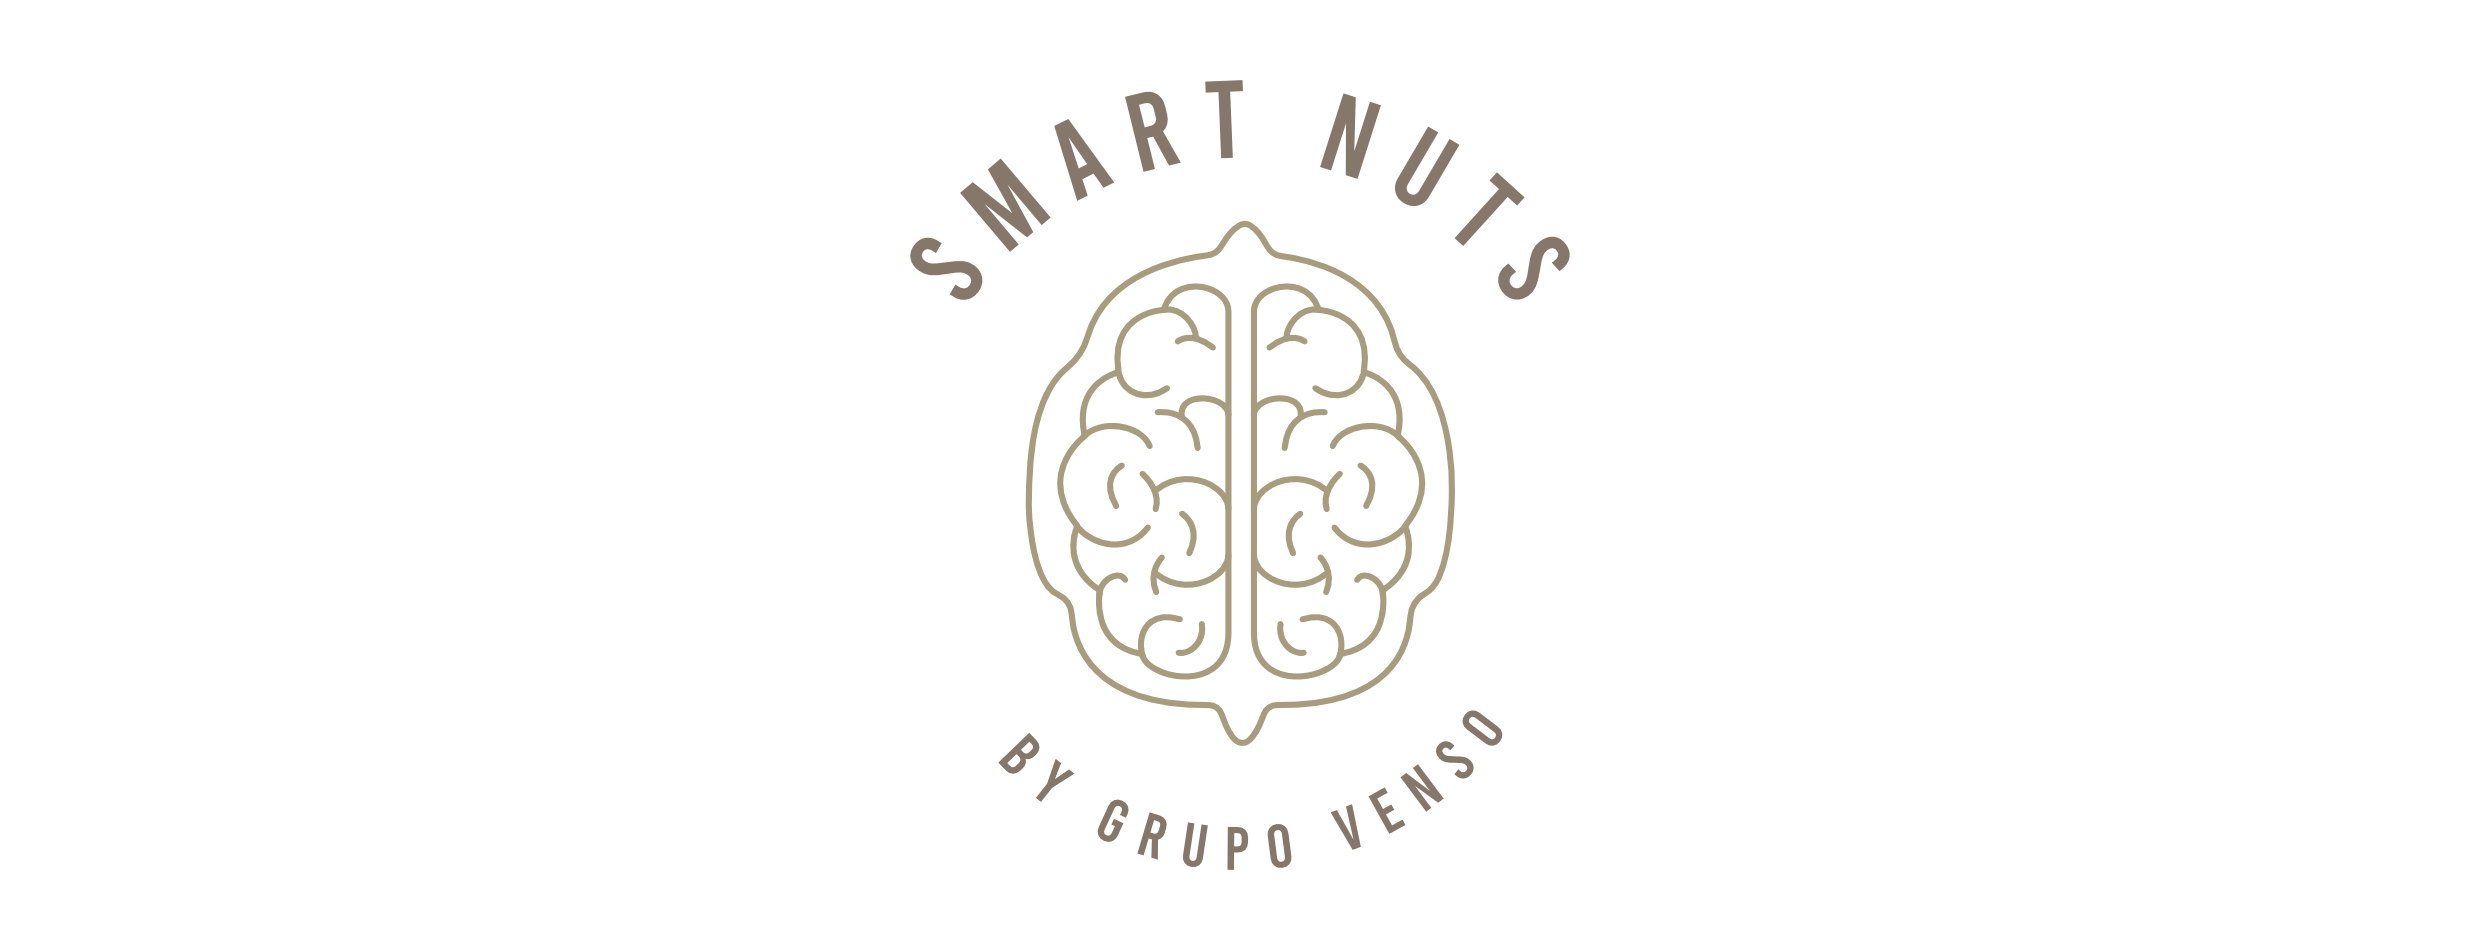 Smart Nuts Logo. Grupo Venso. Nueces.